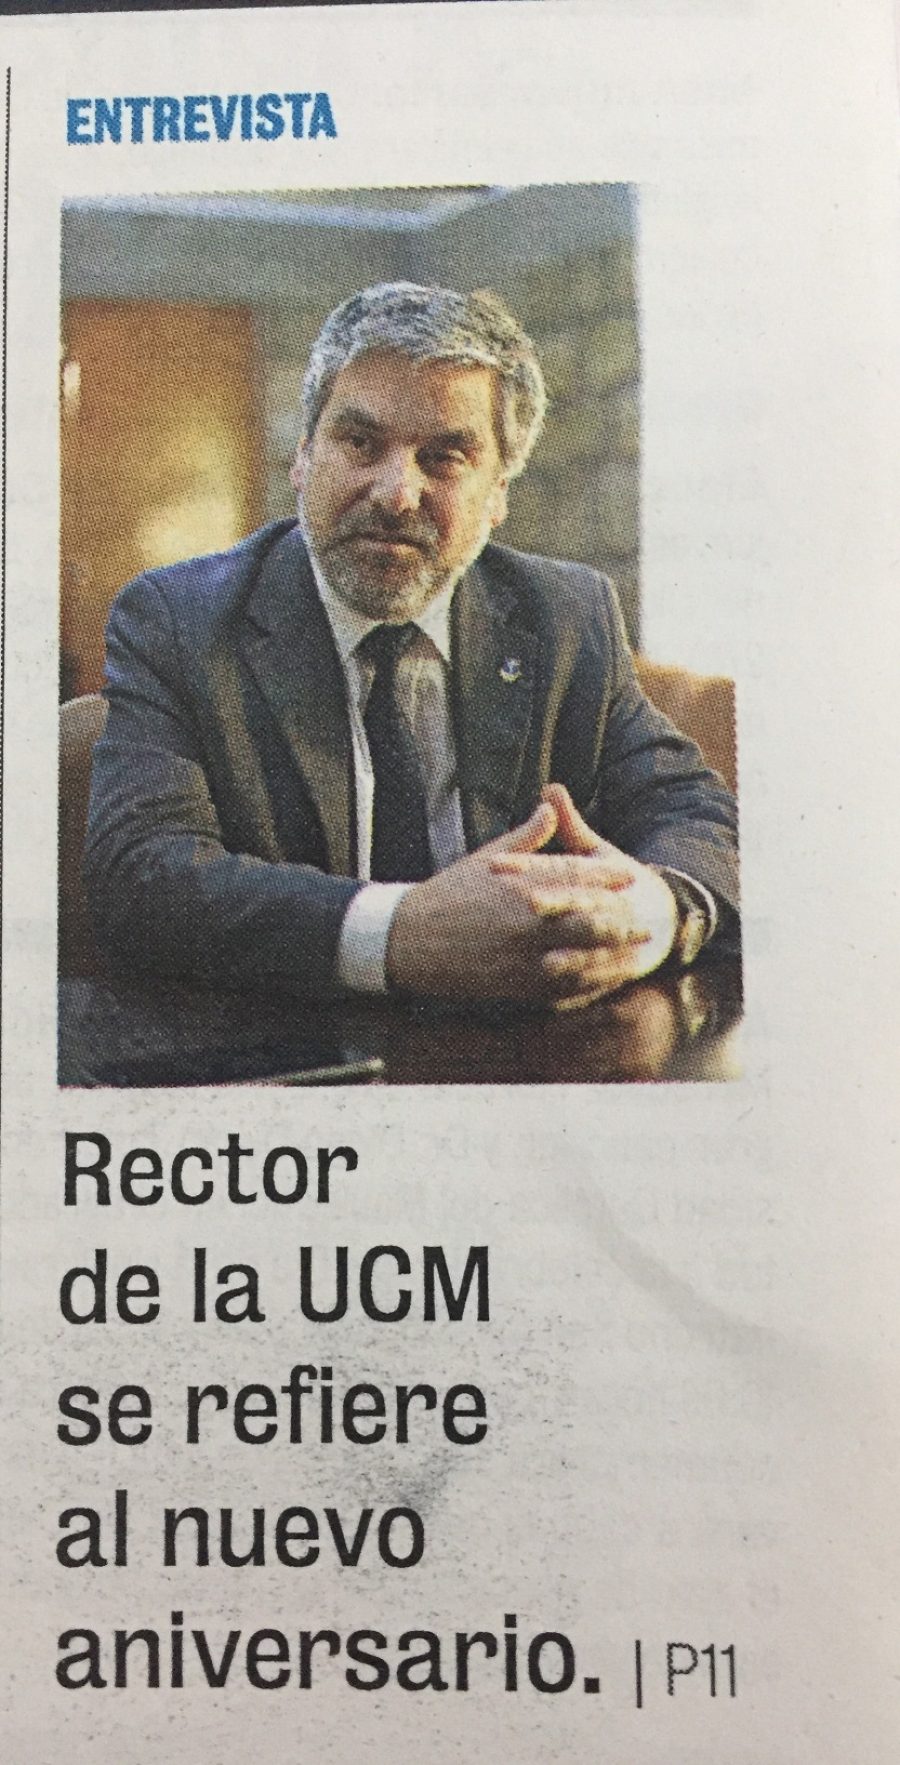 27 de agosto en Diario La Prensa: “Llamado en portada de entrevista Rector”